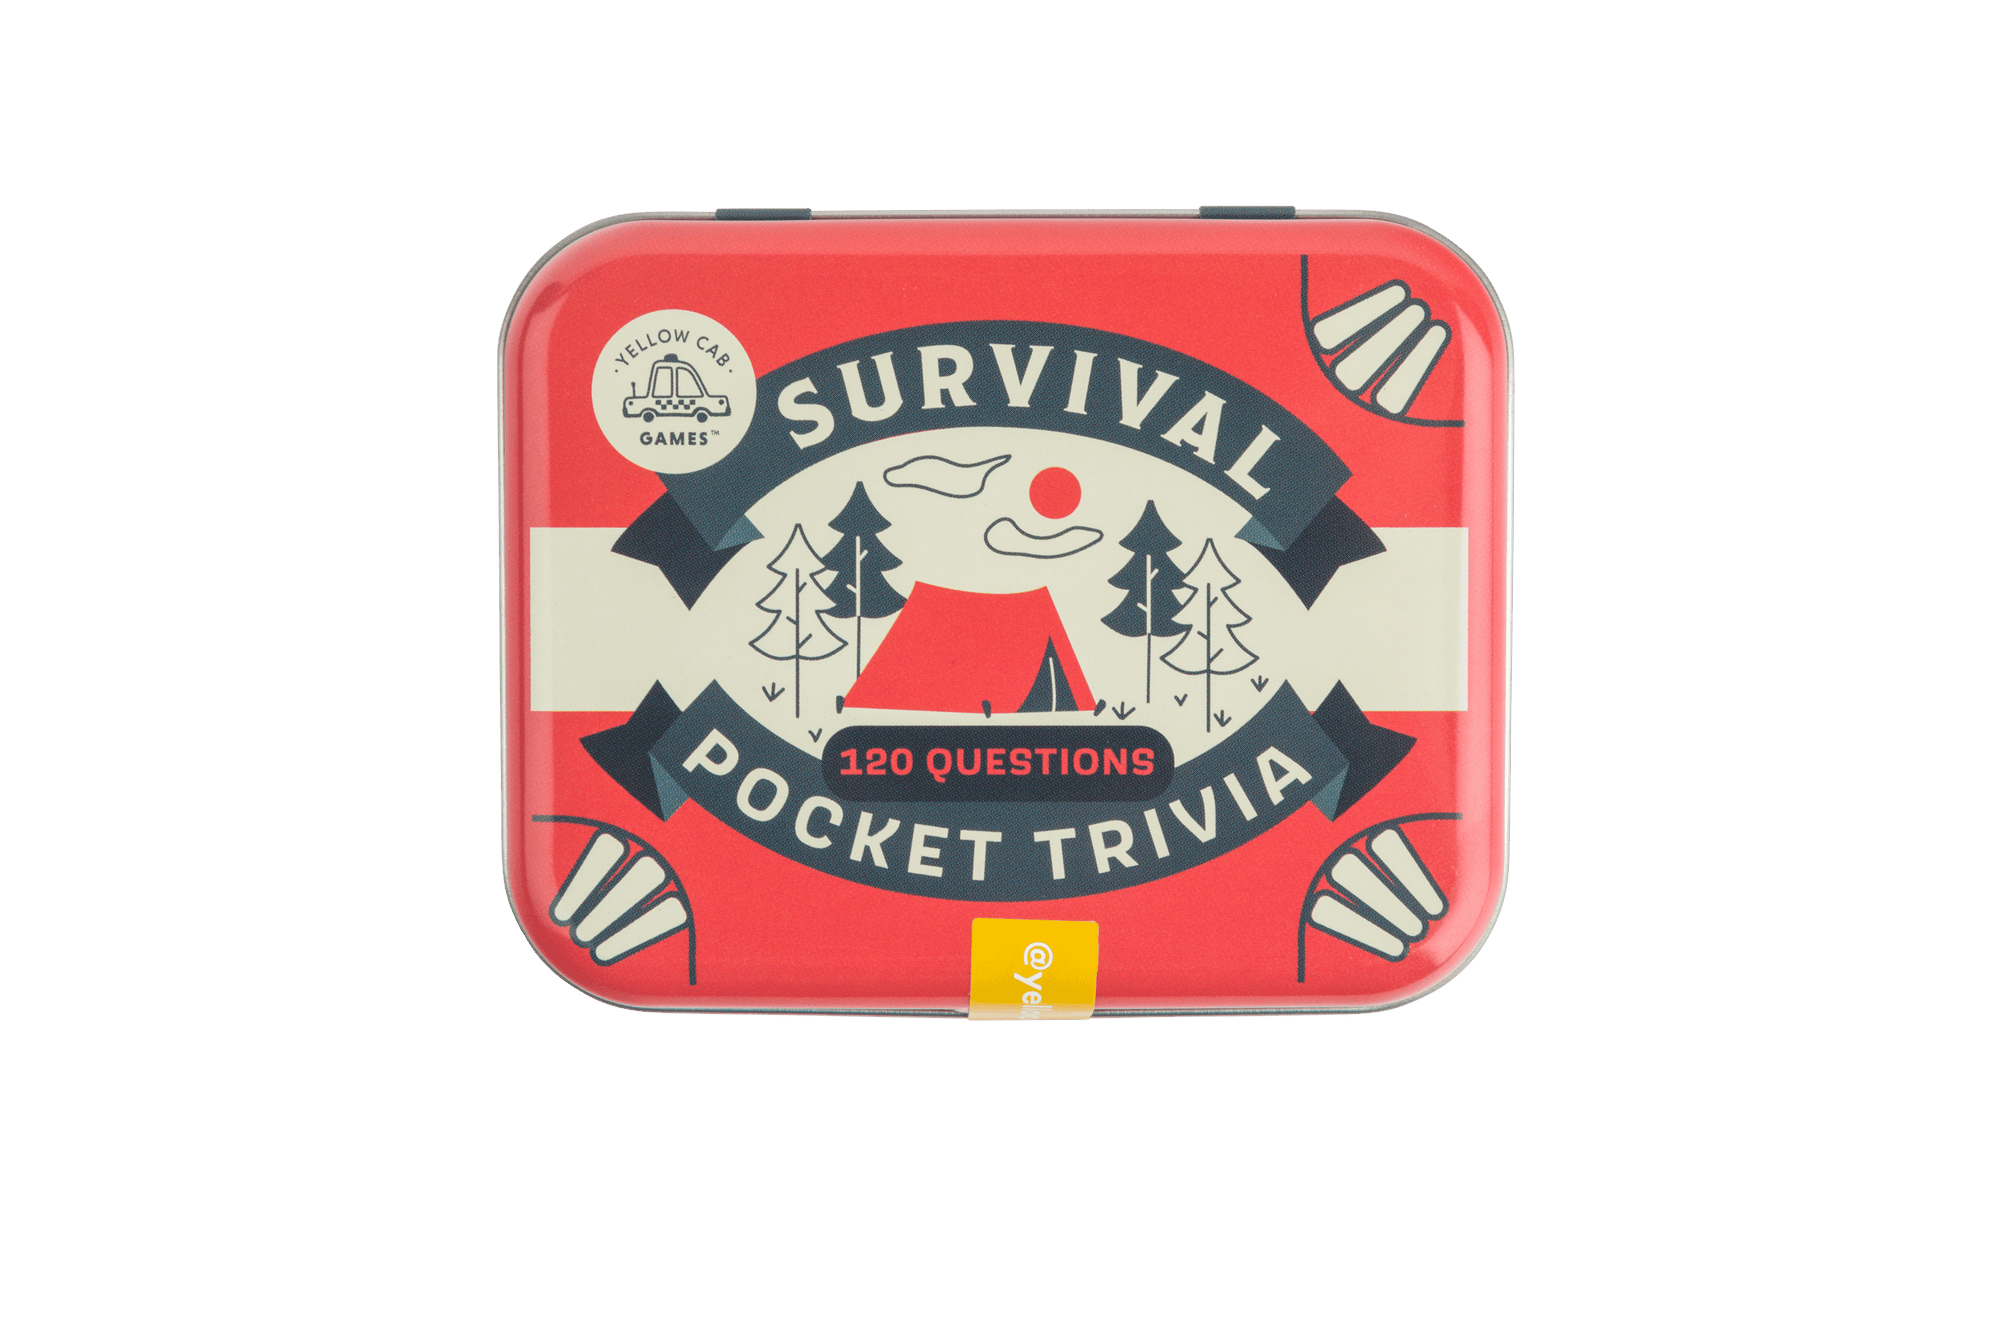 Survival Pocket Trivia